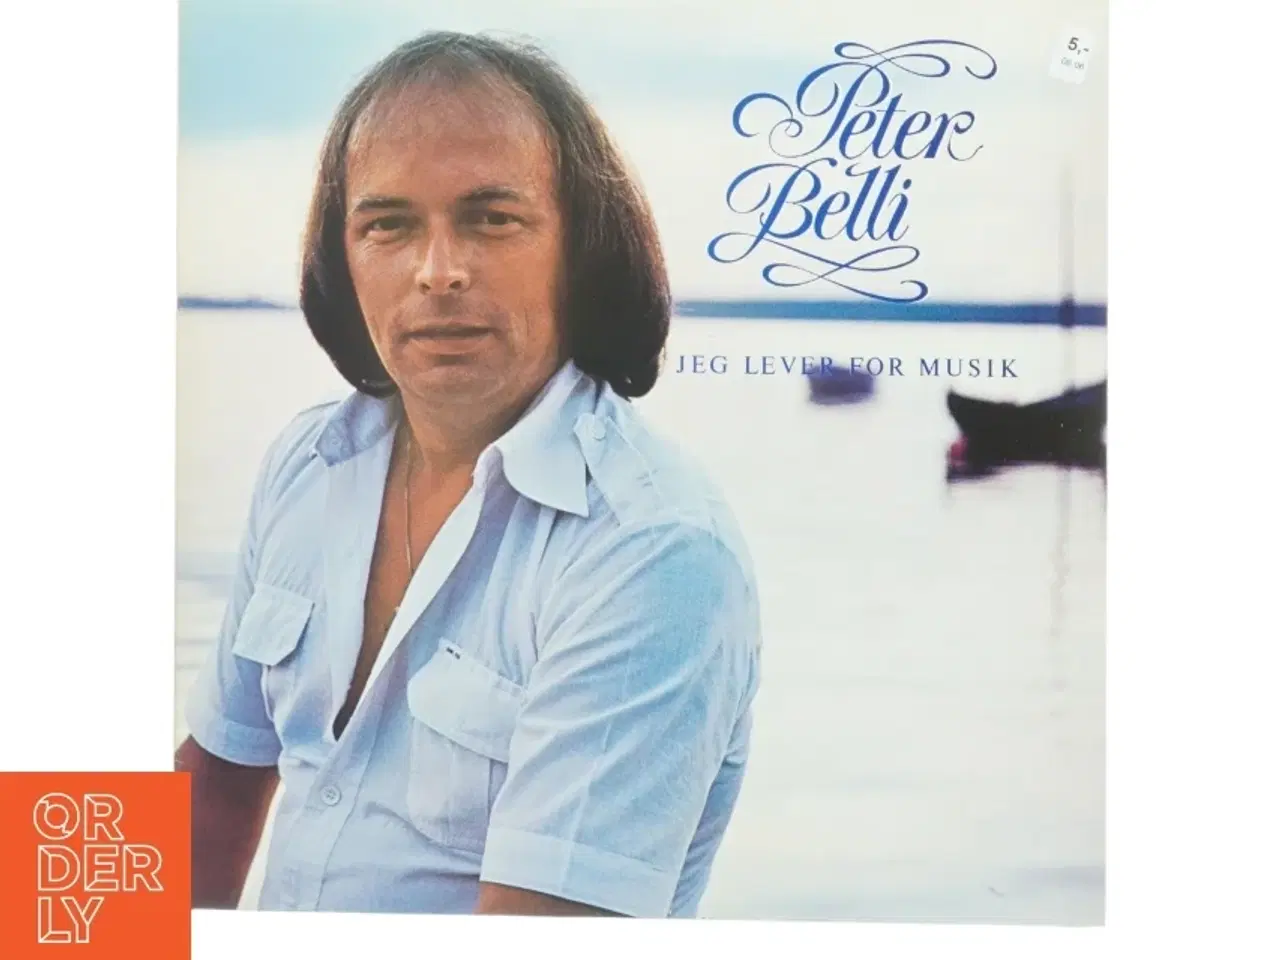 Billede 1 - Peter Belli Jeg lever for musik Vinylplade fra Polydor (str. 31 x 31 cm)